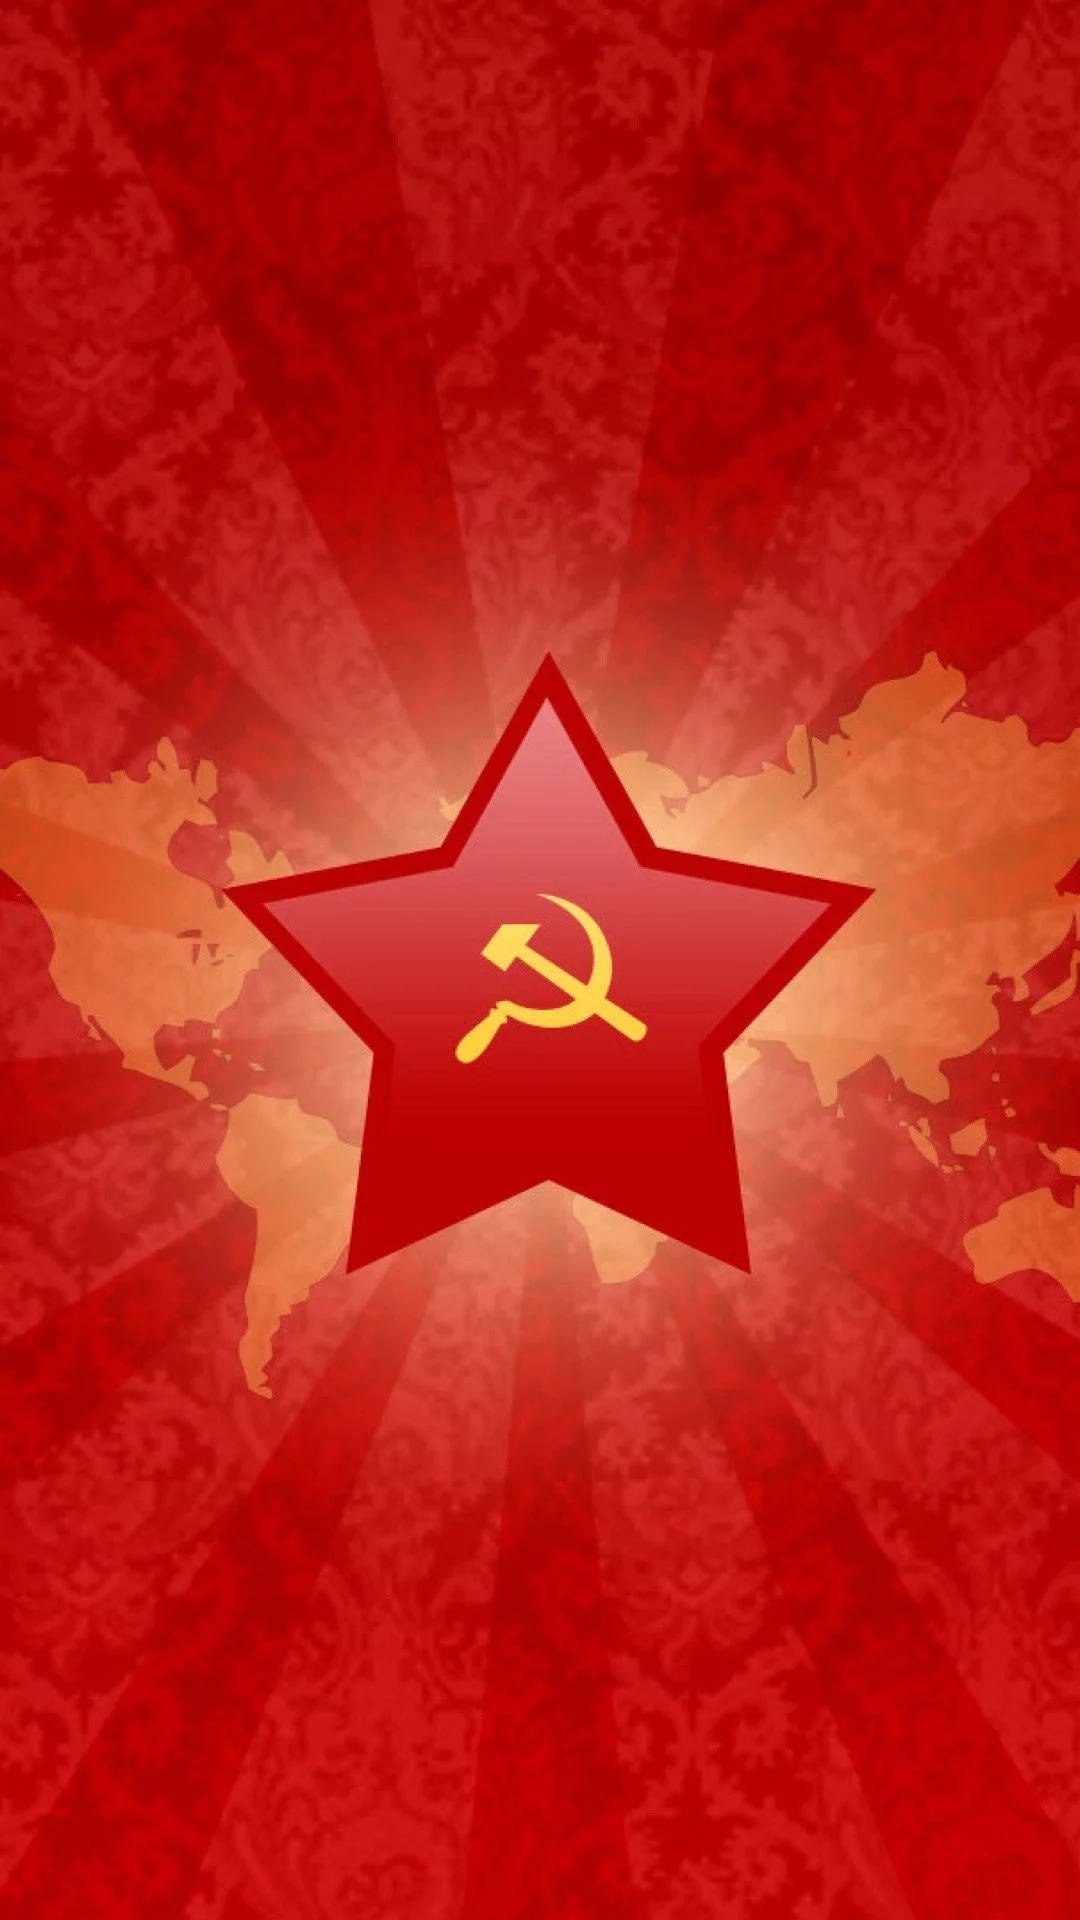 Sovjetunionensflagga På Rysslands Karta. Wallpaper